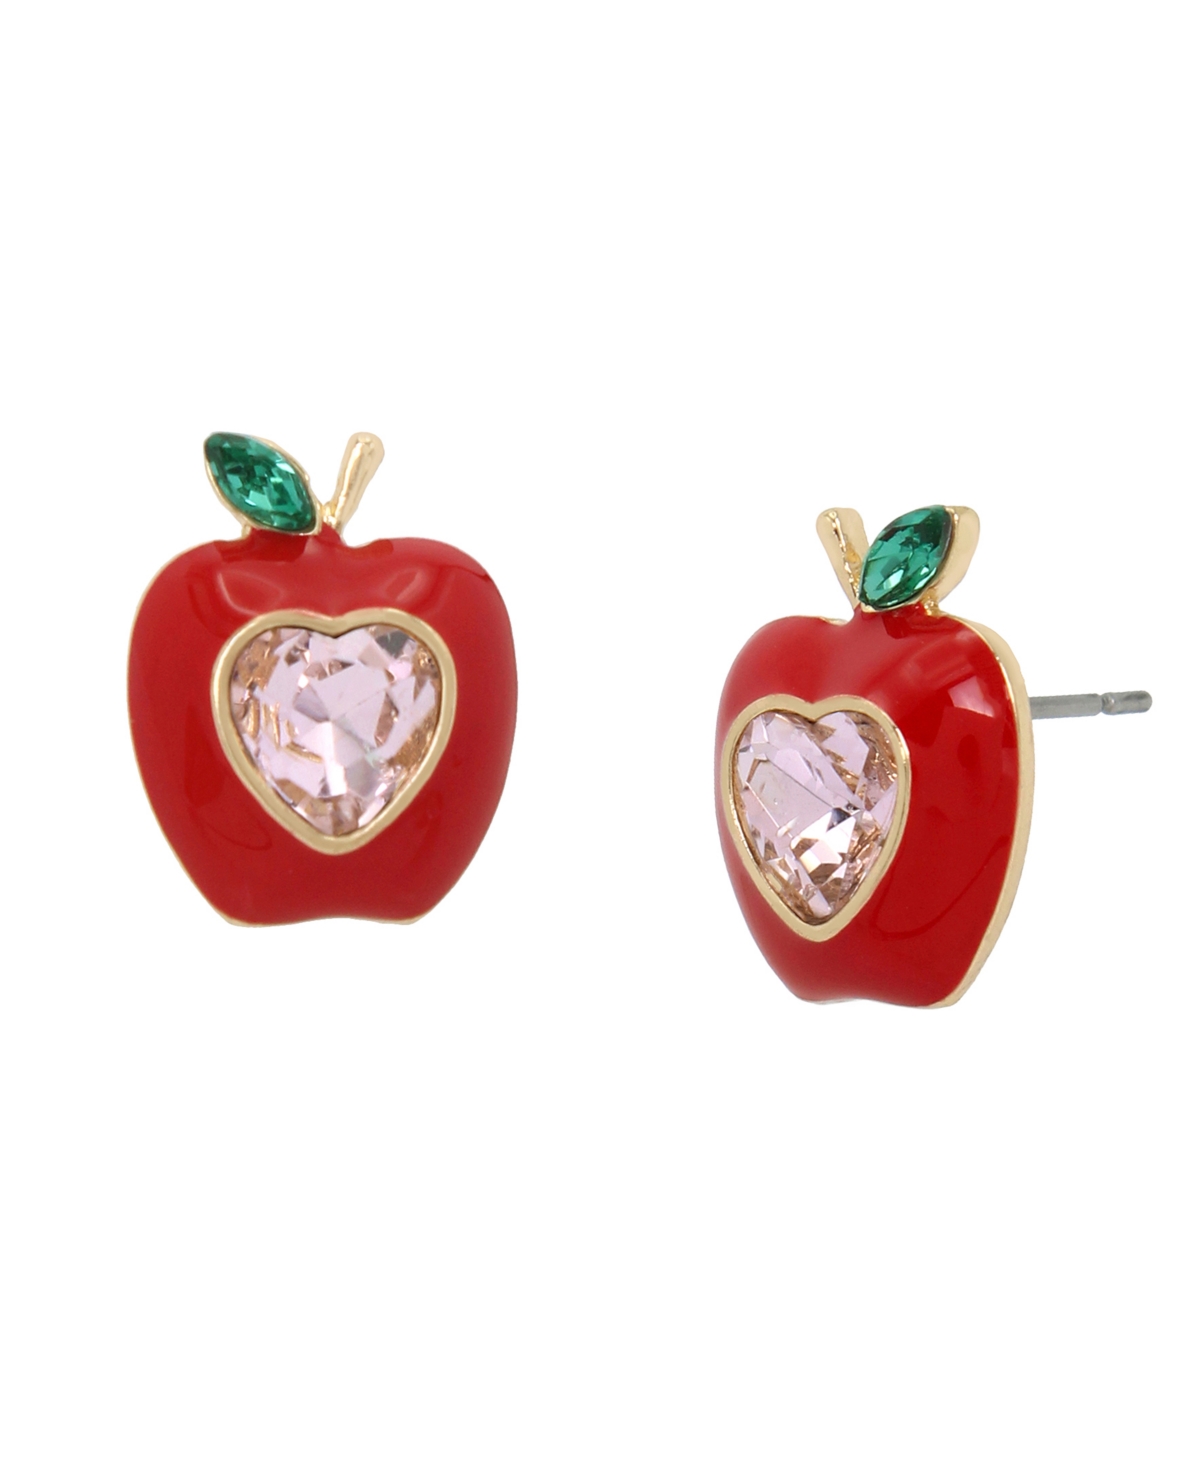 Faux Stone Apple Stud Earrings - Red